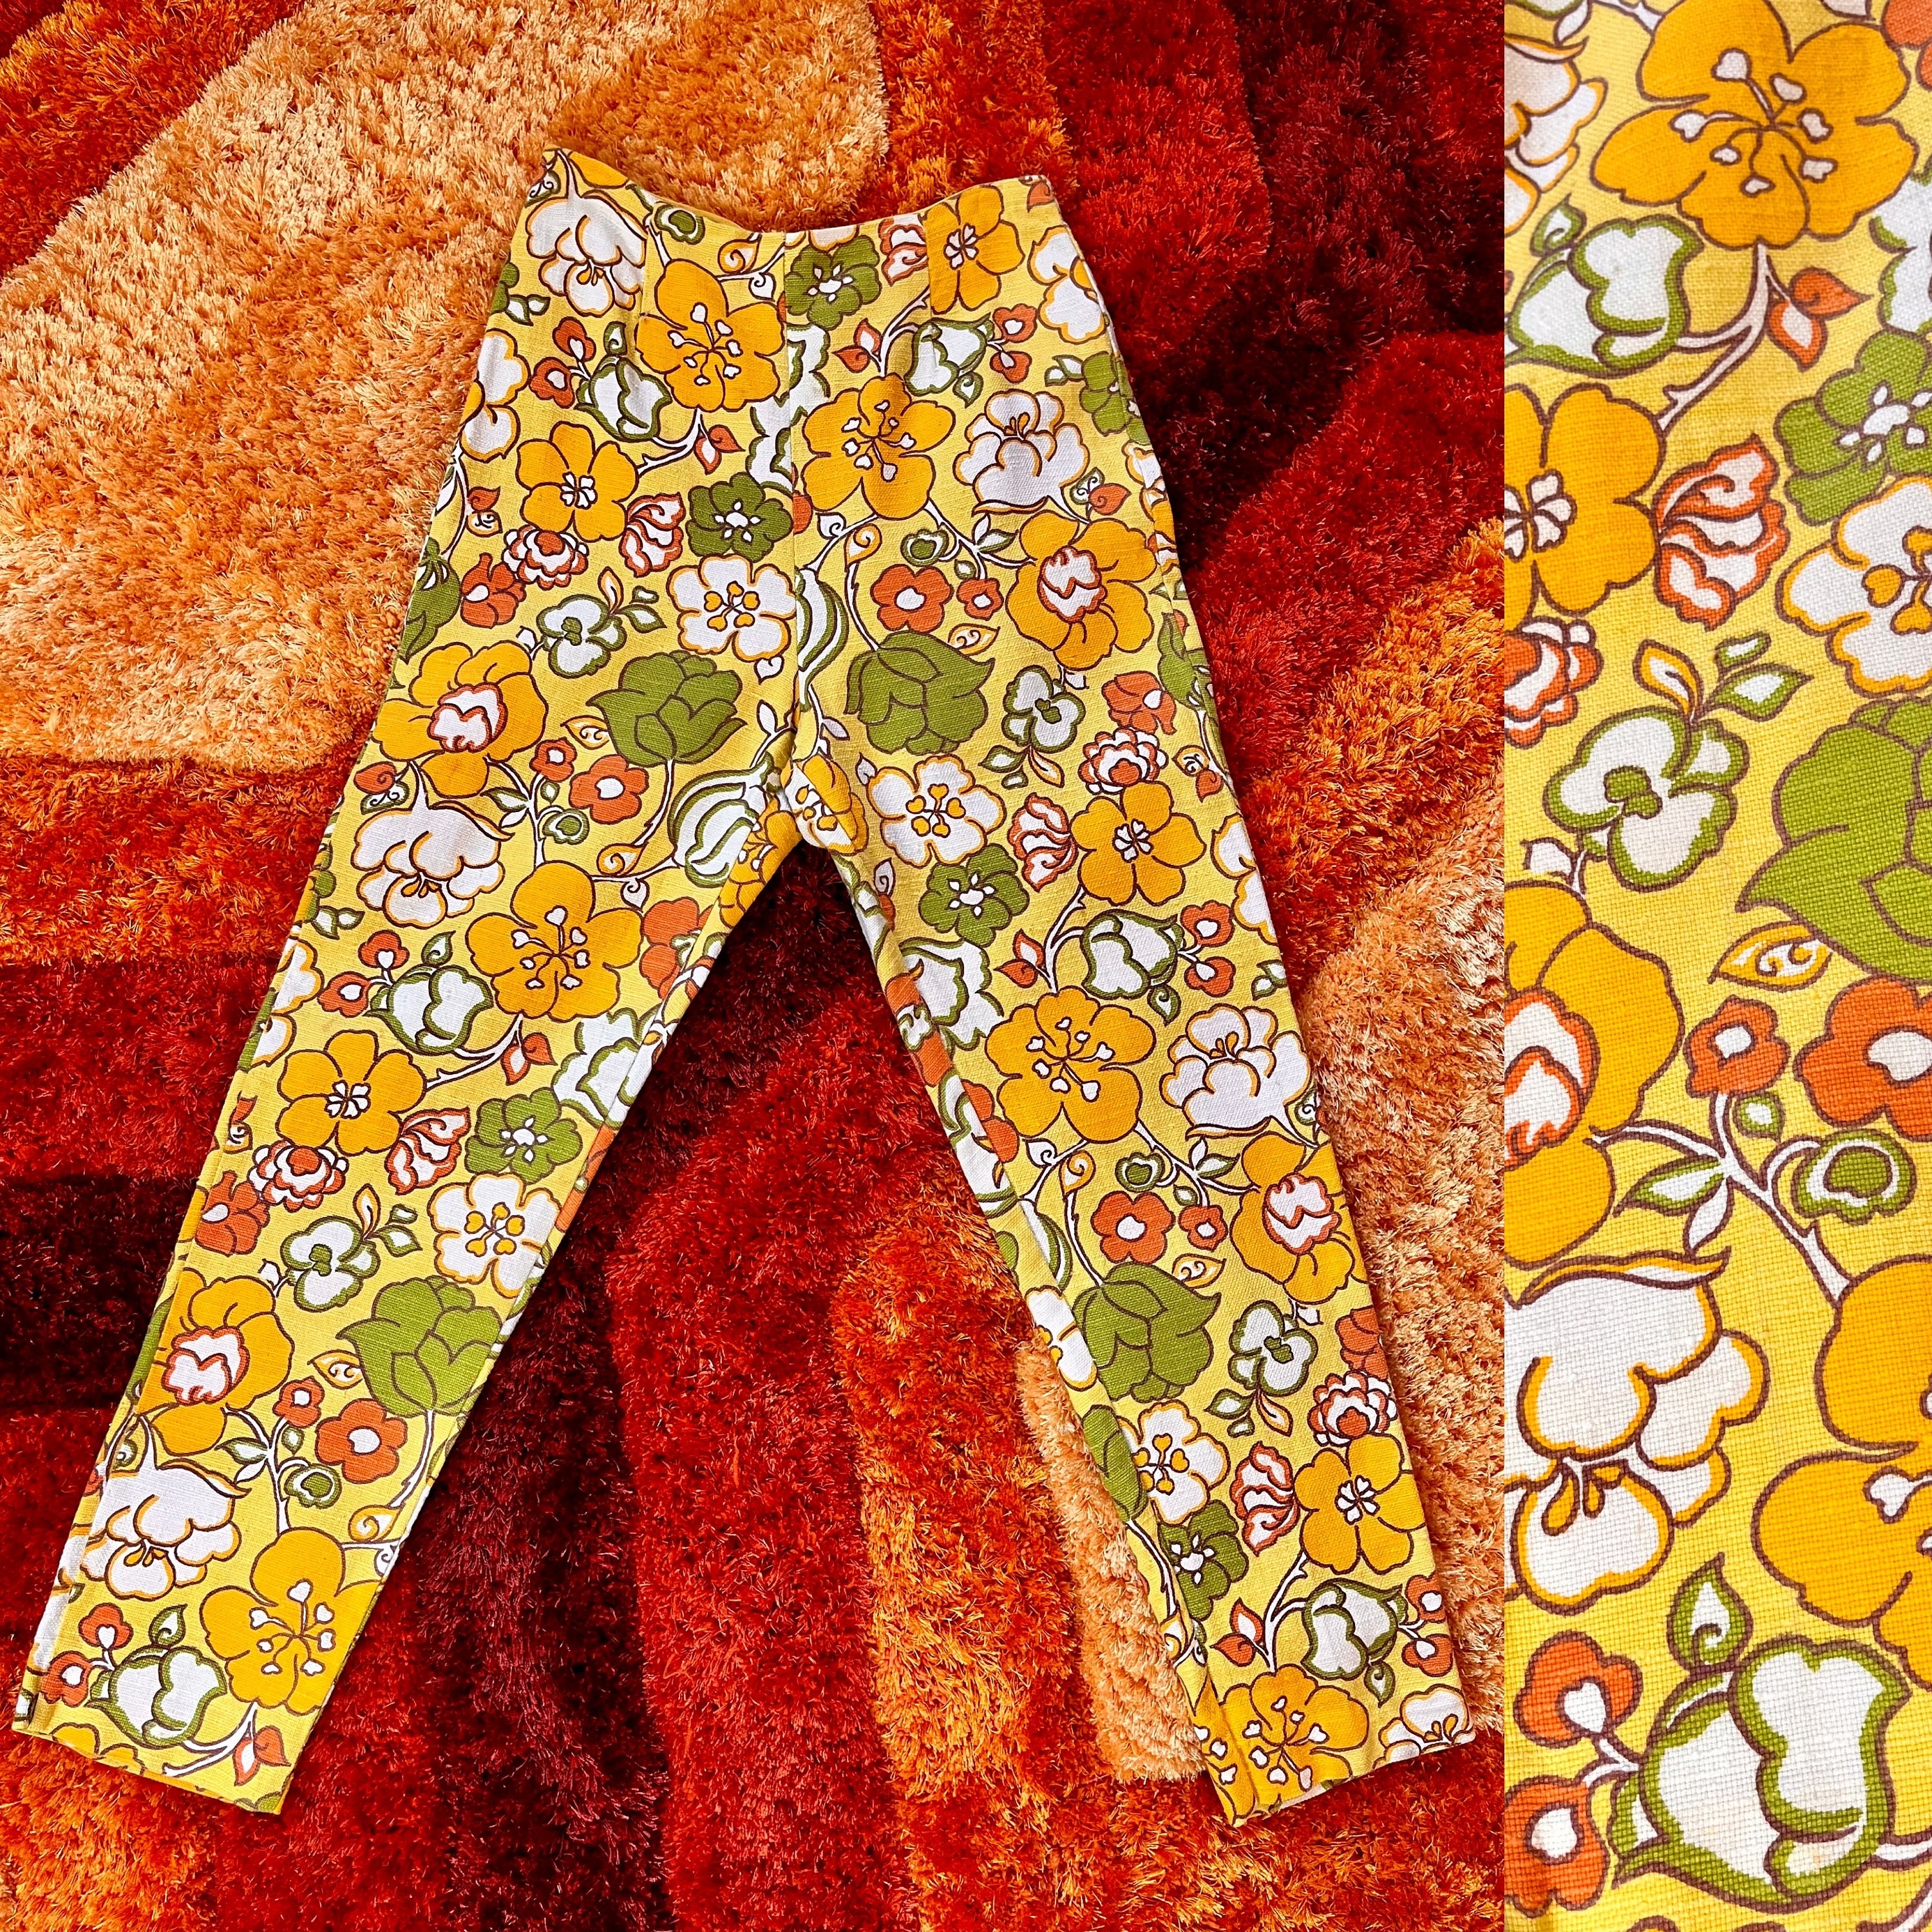 1960's pop art flower pants – Erin Templeton